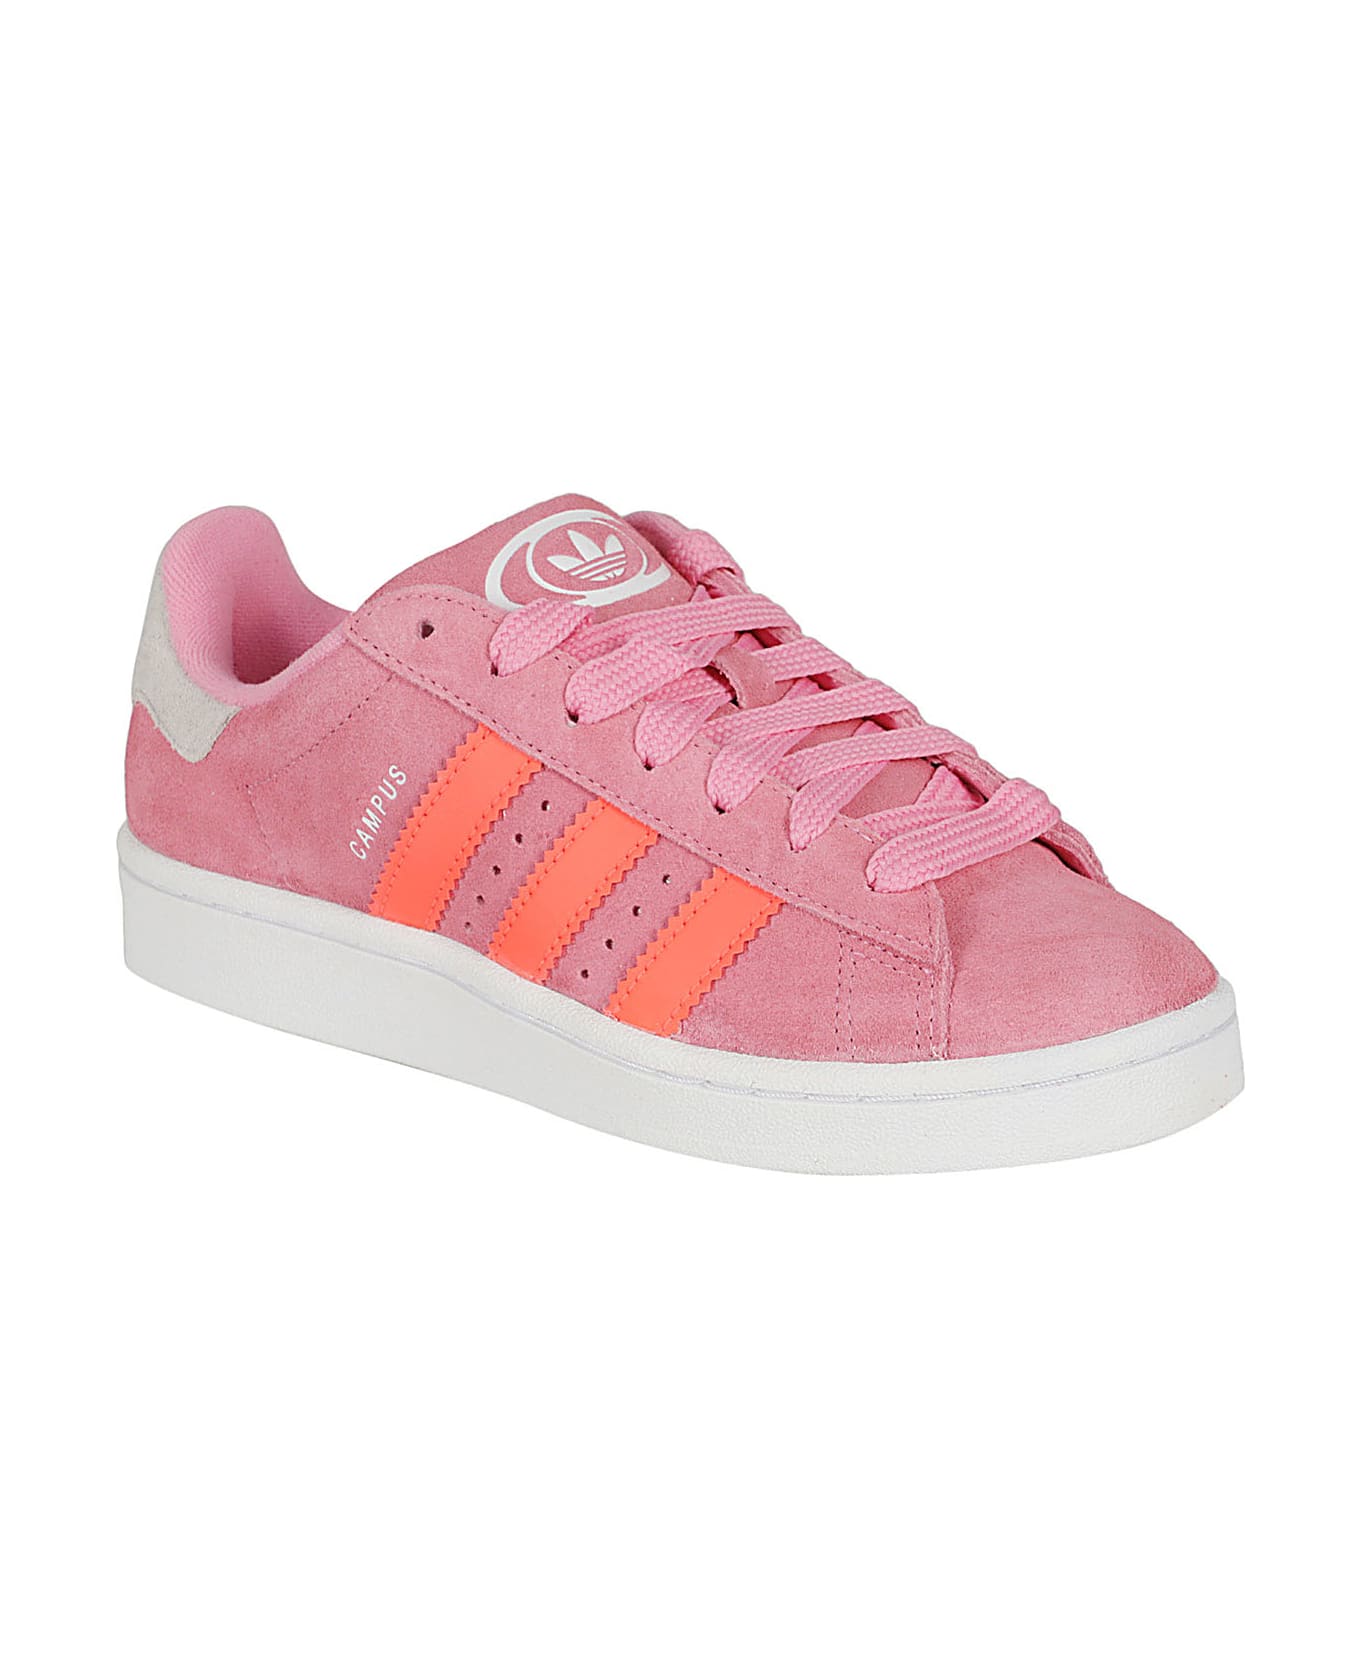 Adidas Originals Campus - Pink シューズ